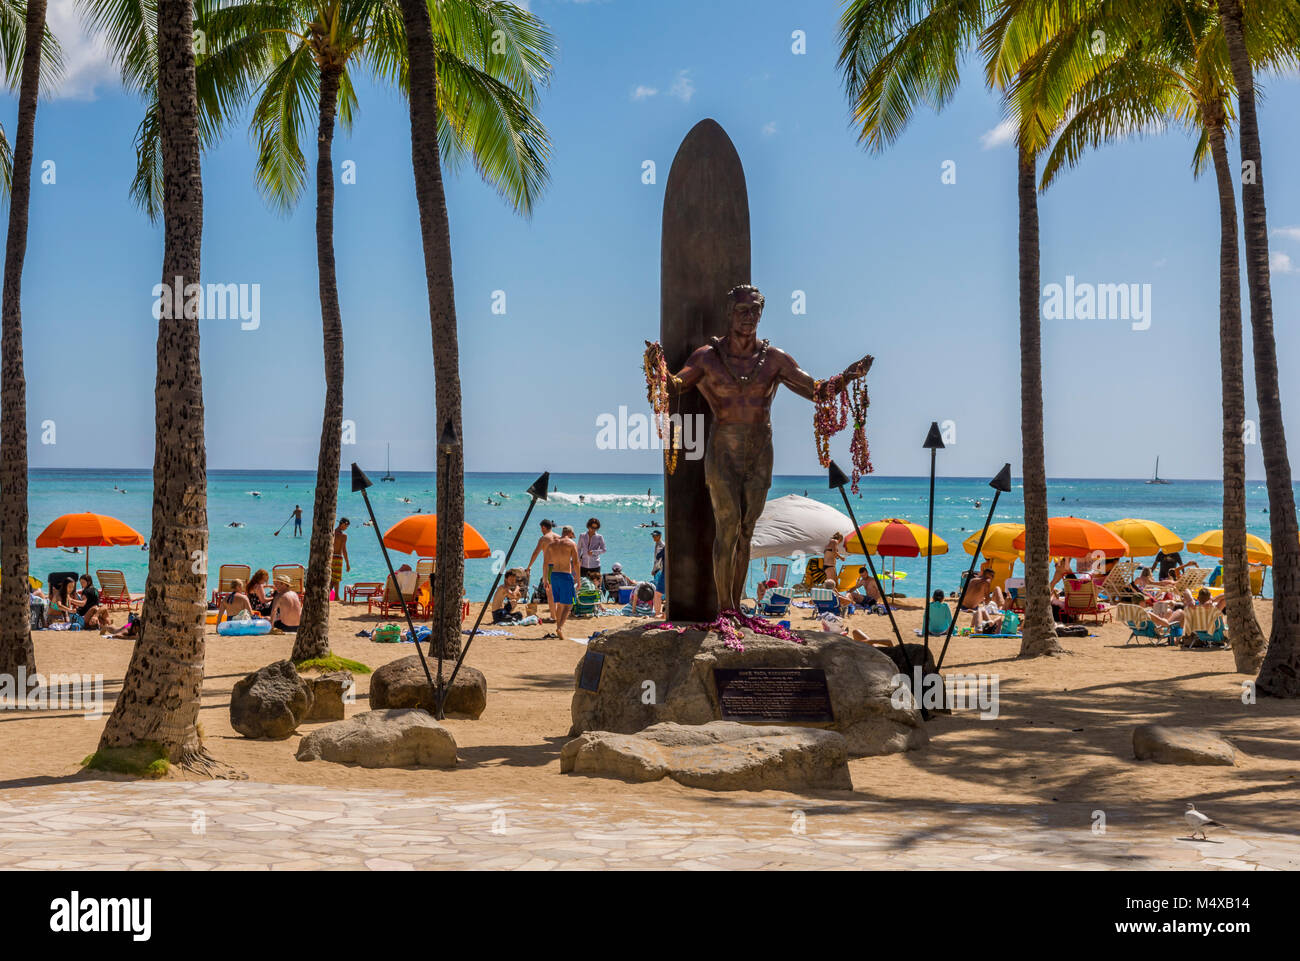 La statue de Duke Kahanamoku, surfeur hawaïen et Olympien, sur la plage de Waikiki avec le soleil, les surfeurs, les touristes, parasols de plage à Honolulu, Hawaii, USA. Banque D'Images